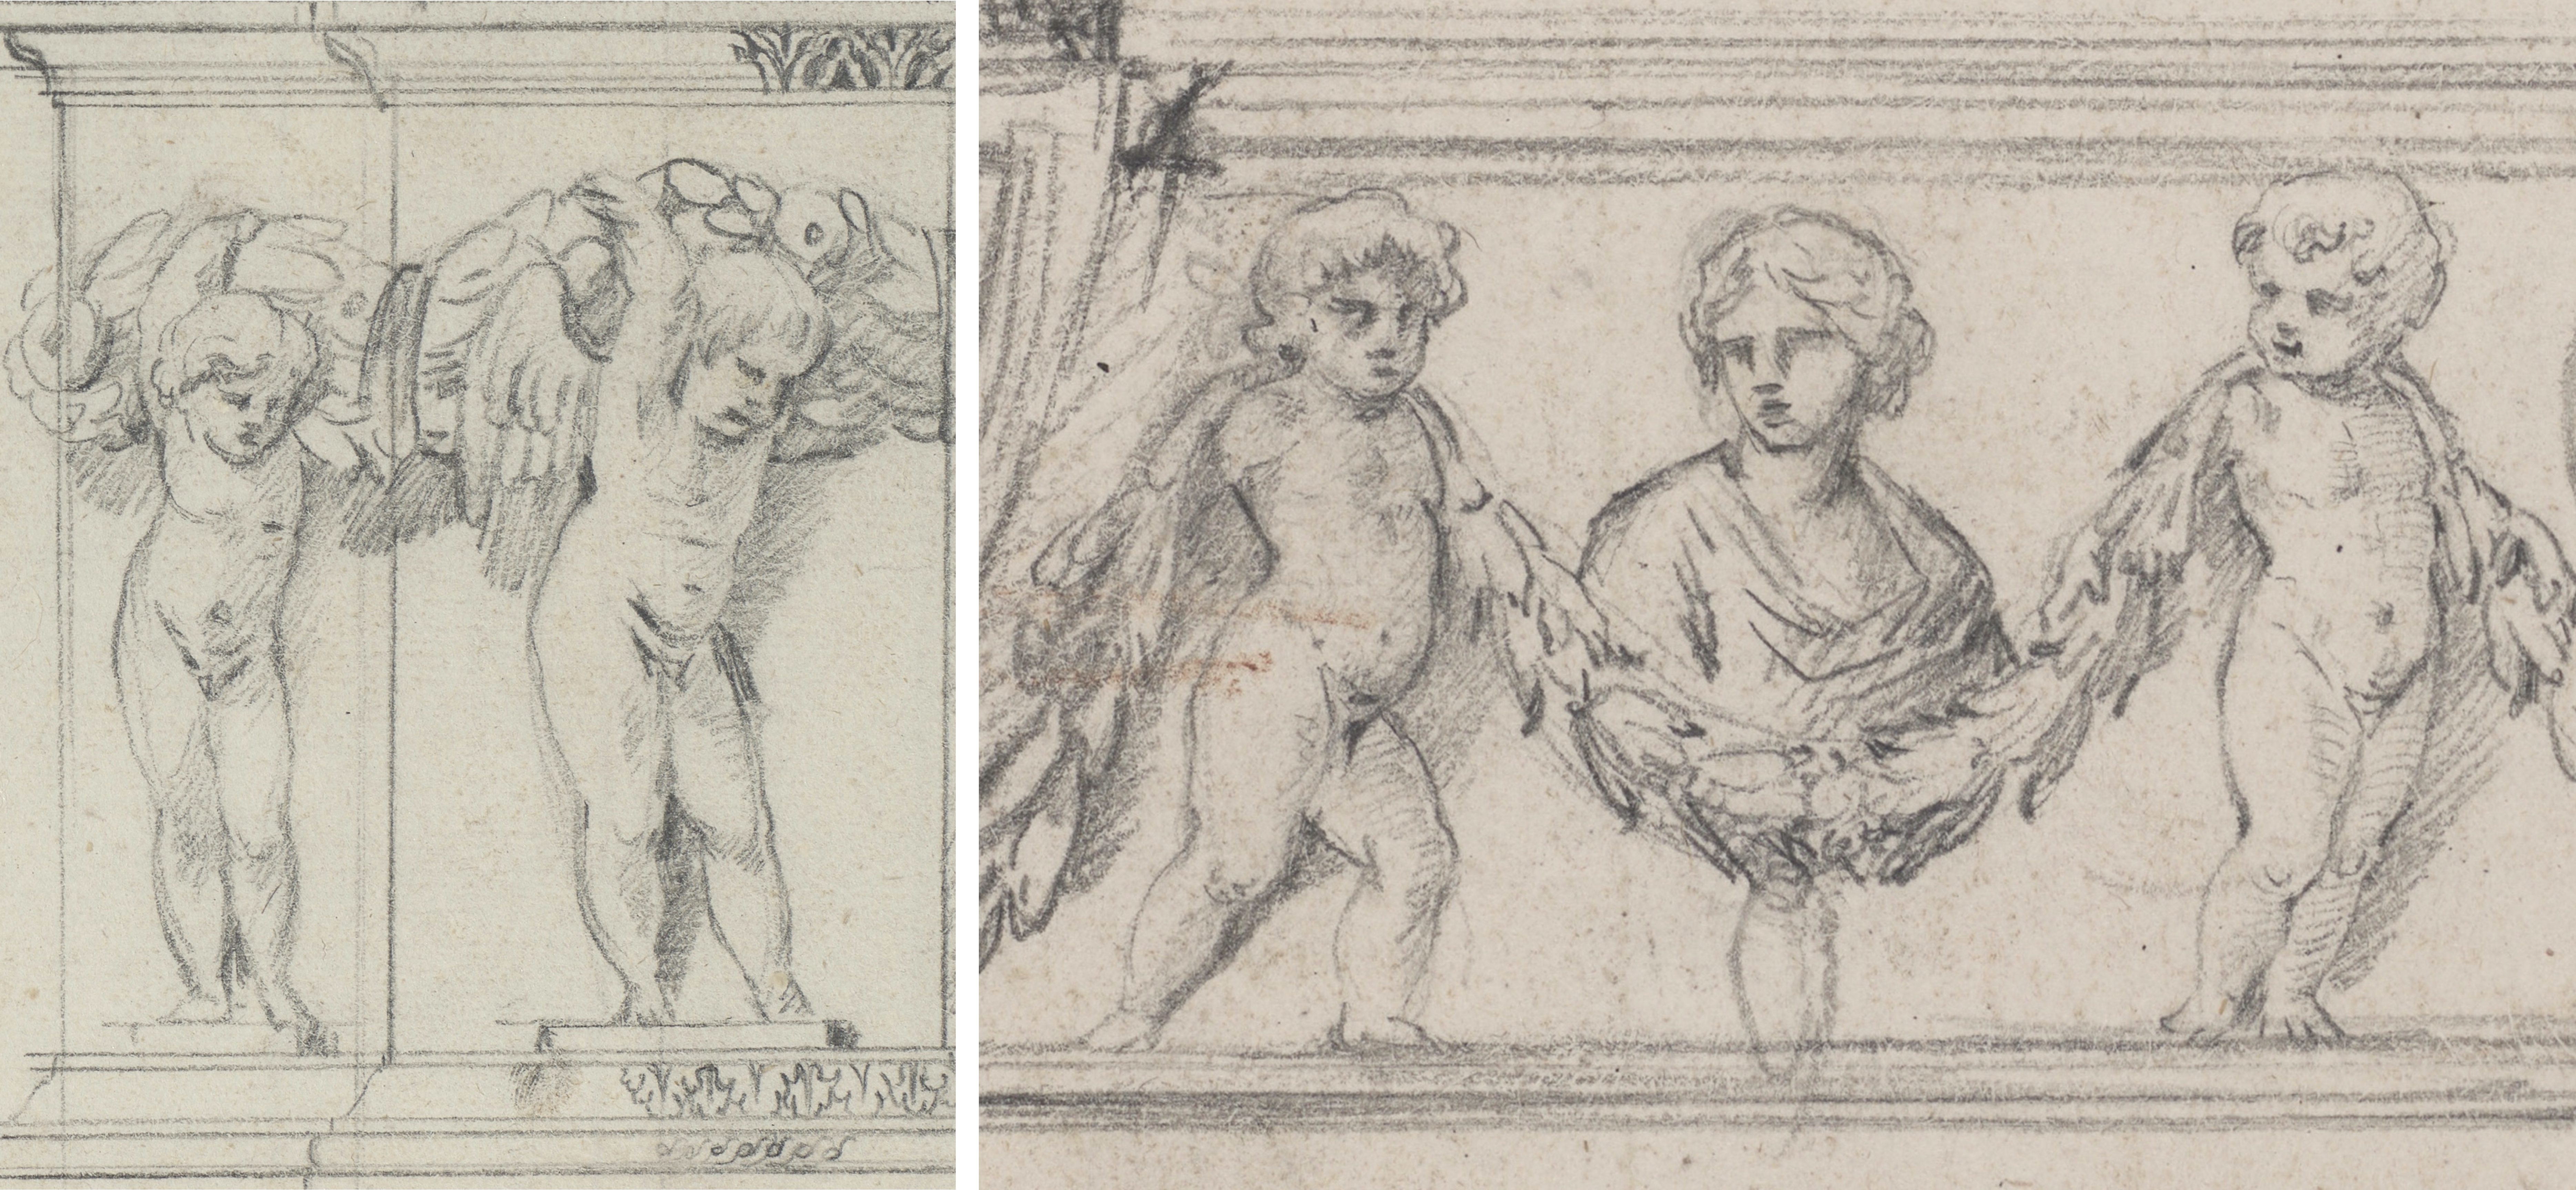 Zwei Ausschnitte von Zeichnungen die junge Knaben, Eroten genannt, darstellen. Sie tragen jeweils Ranken.  